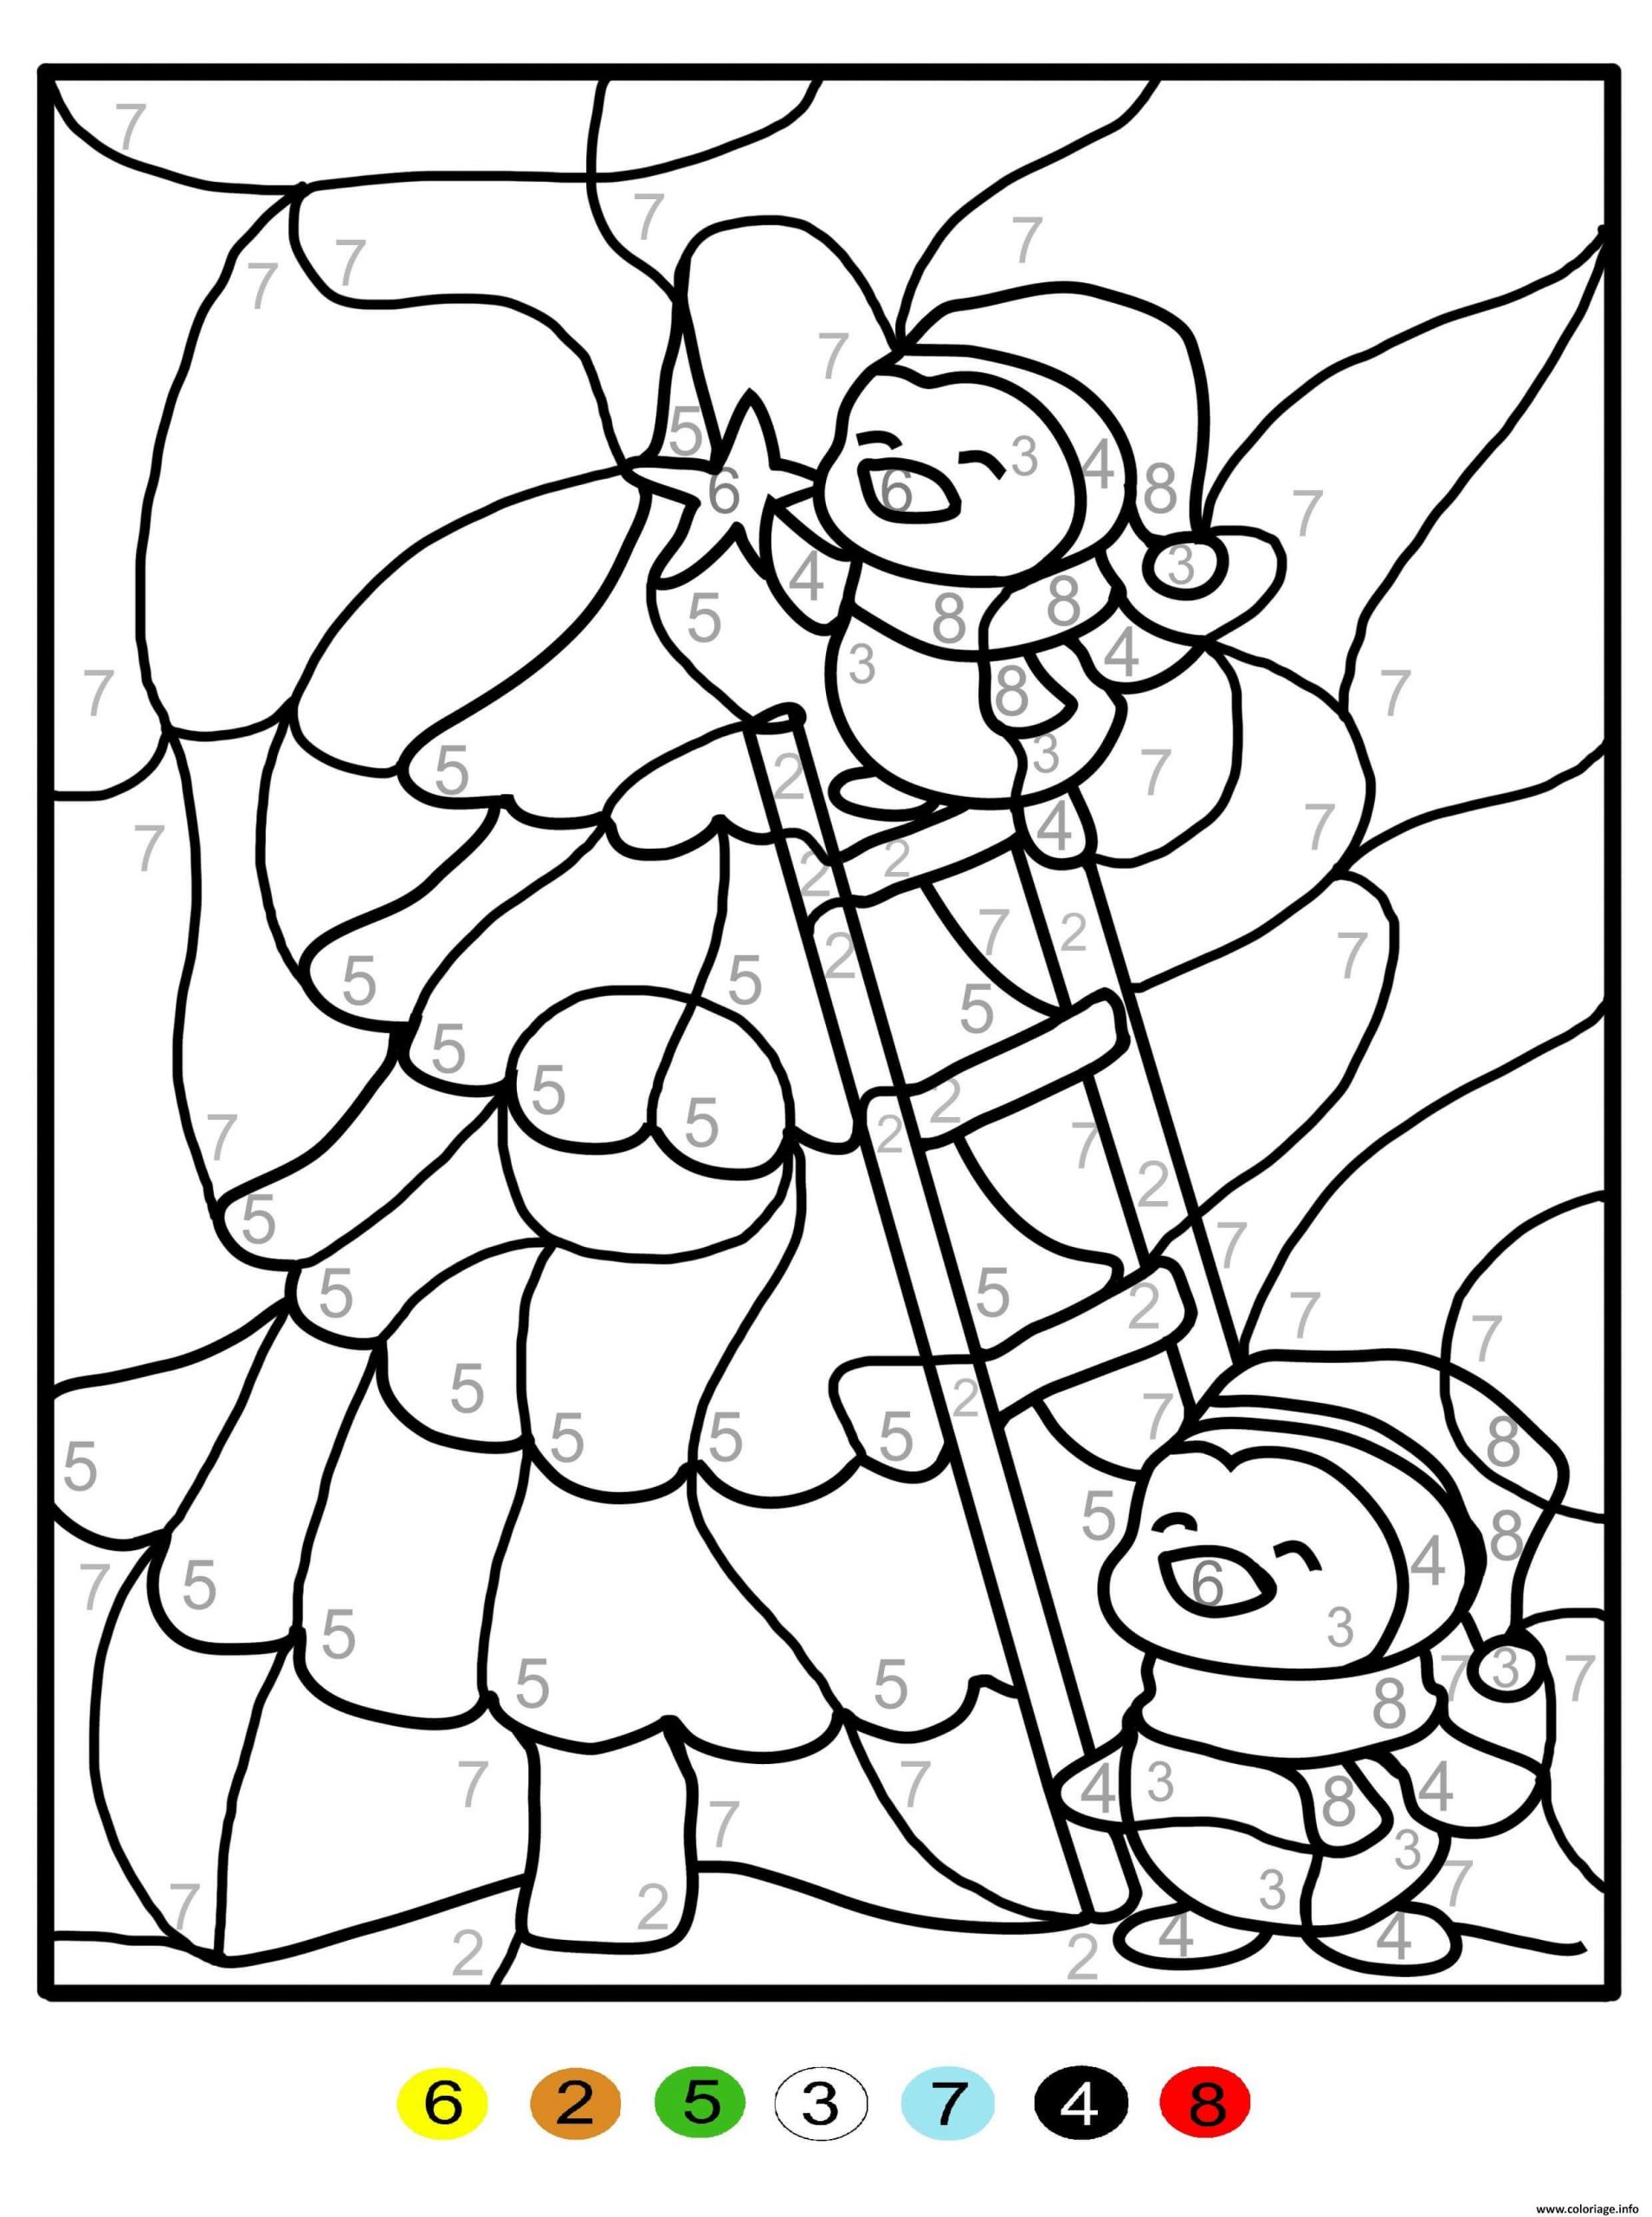 Coloriage Magique Sapin De Noel Chiffre Numero Maternelle Dessin pour Coloriage Gratuit À Imprimer Sapin De Noel 